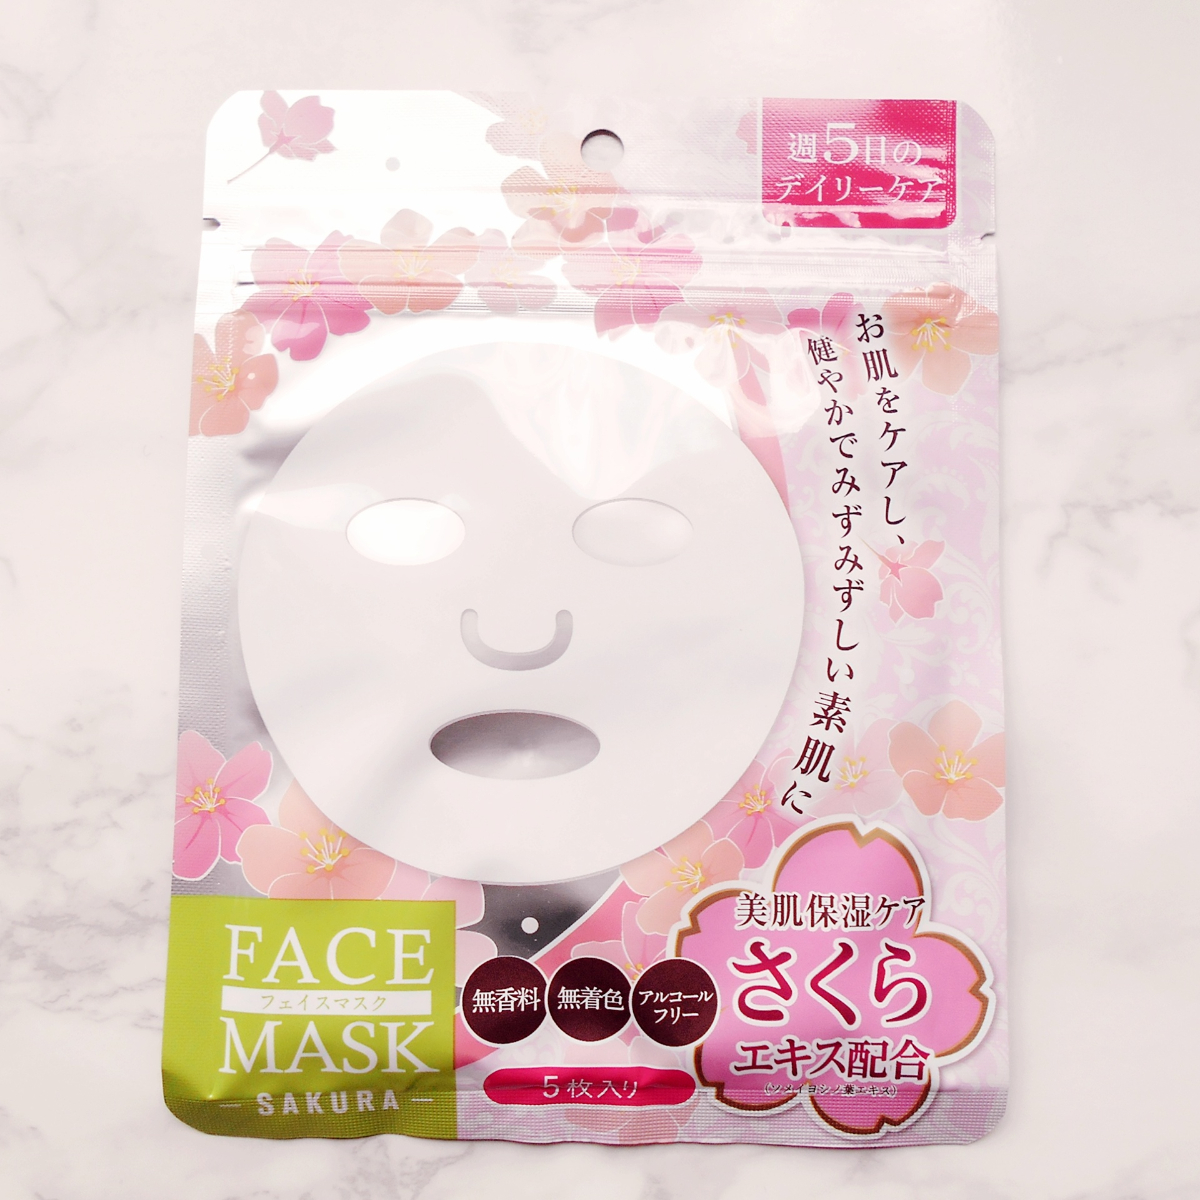 ダイソー】の「フェイスマスク5枚入」のコスパが最高すぎる♡1枚約20円でお手軽ケア♪